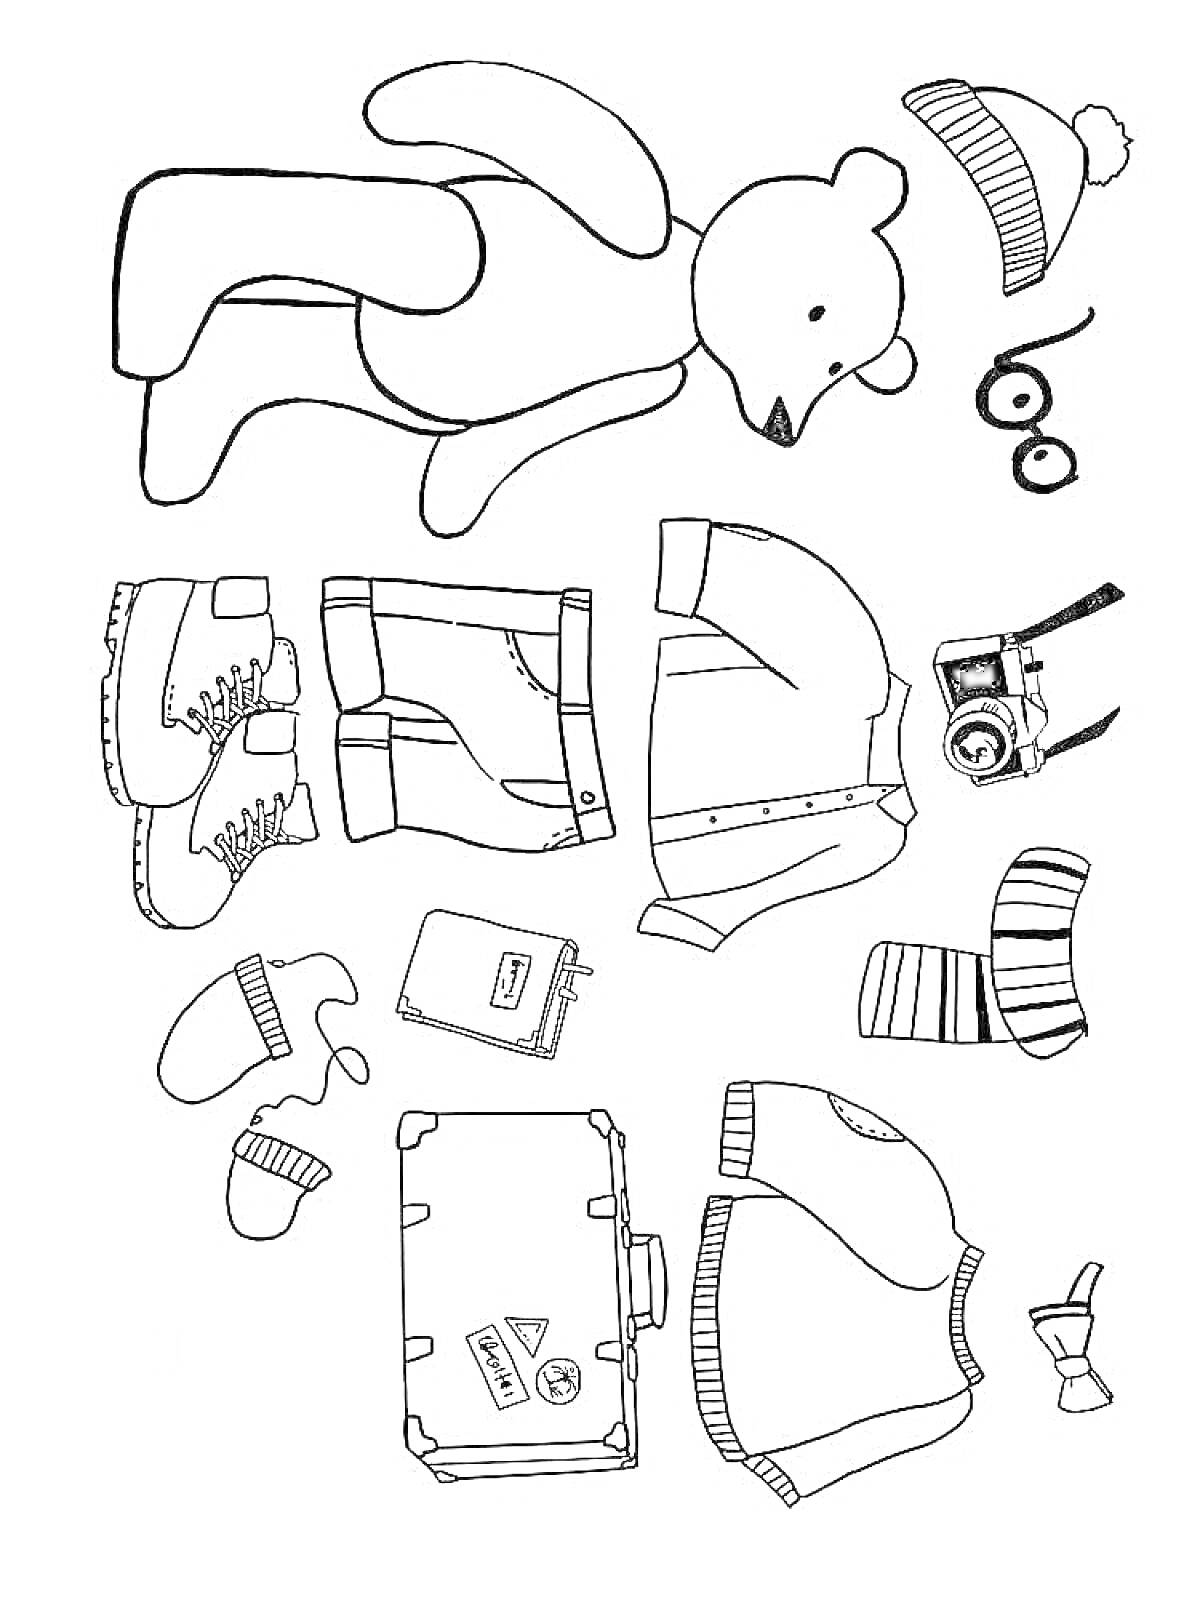 Раскраска Мишка-путешественник с шапкой, очками, ботинками, шортами, куртками, камерой, носками, варежками, чемоданом и журналом